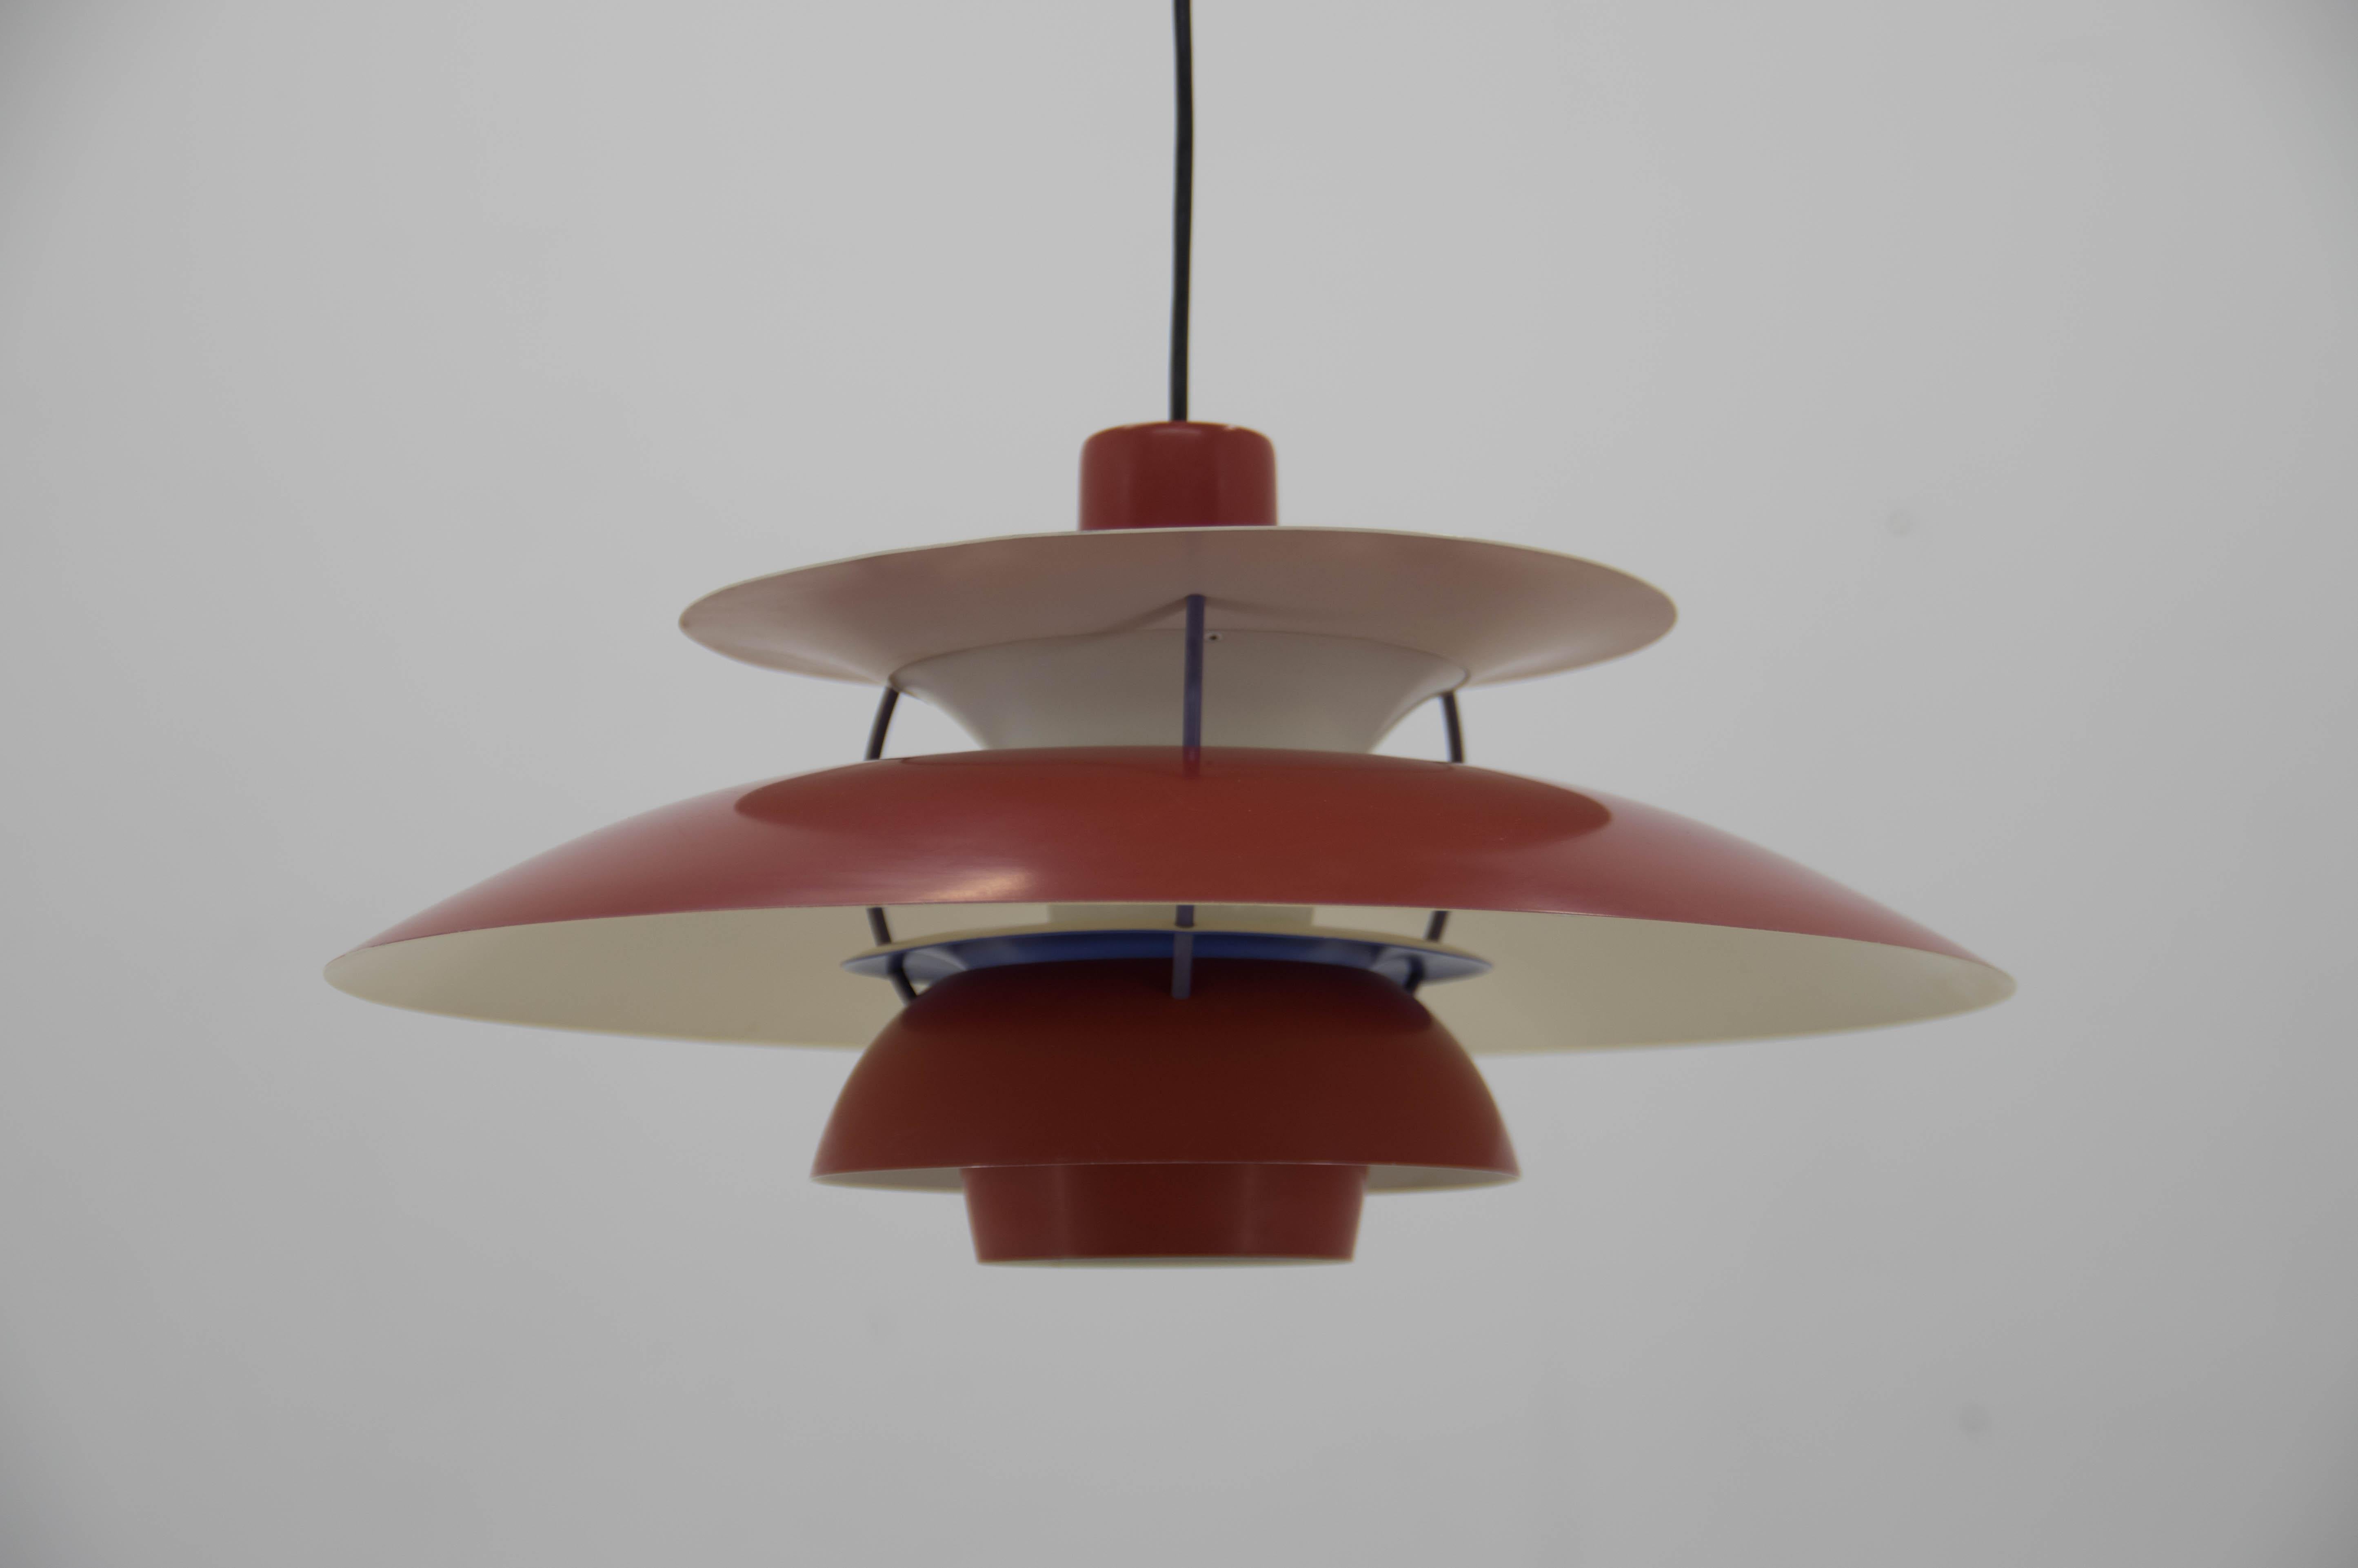 Eine der berühmtesten Leuchten von Poul Henningsen, entworfen für Louis Poulsen, Dänemark. Sehr guter Originalzustand. Eine hellere Stelle auf der Oberseite siehe Foto.
1x100W, E25-E27 Glühbirne
US-Verkabelung kompatibel